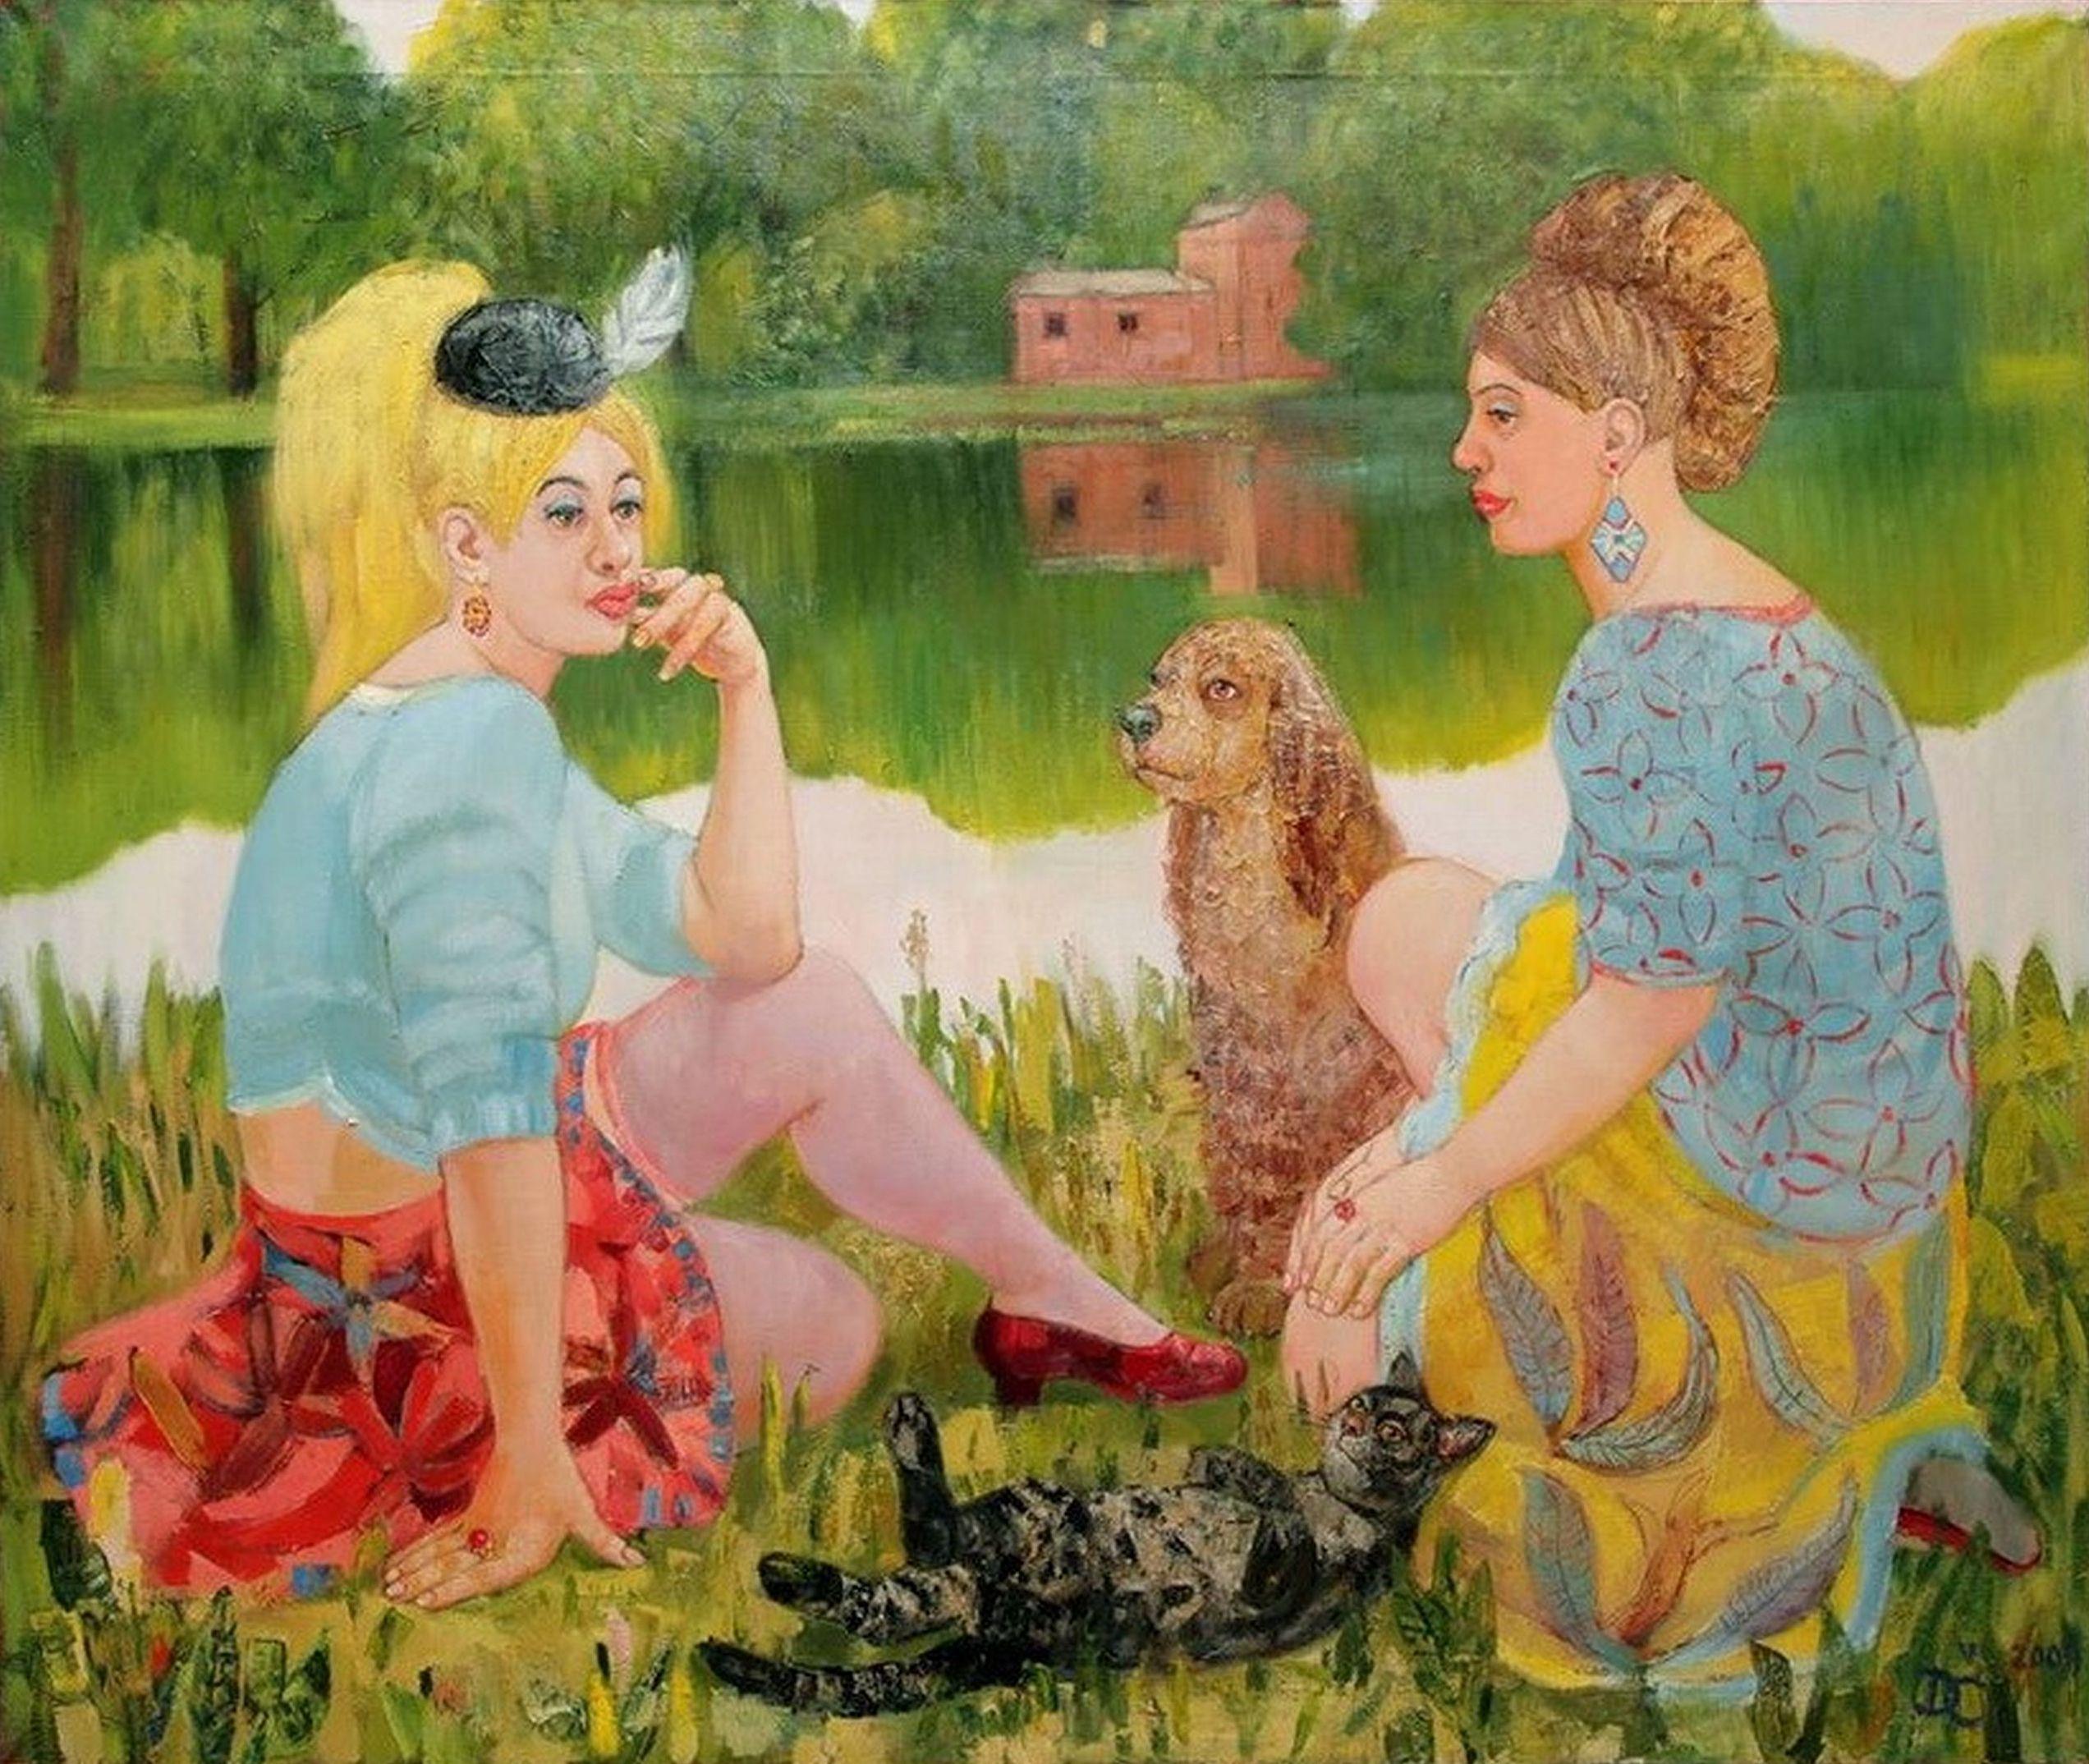 Mara's Pond. 2011. Oil on canvas, 100x110 cm